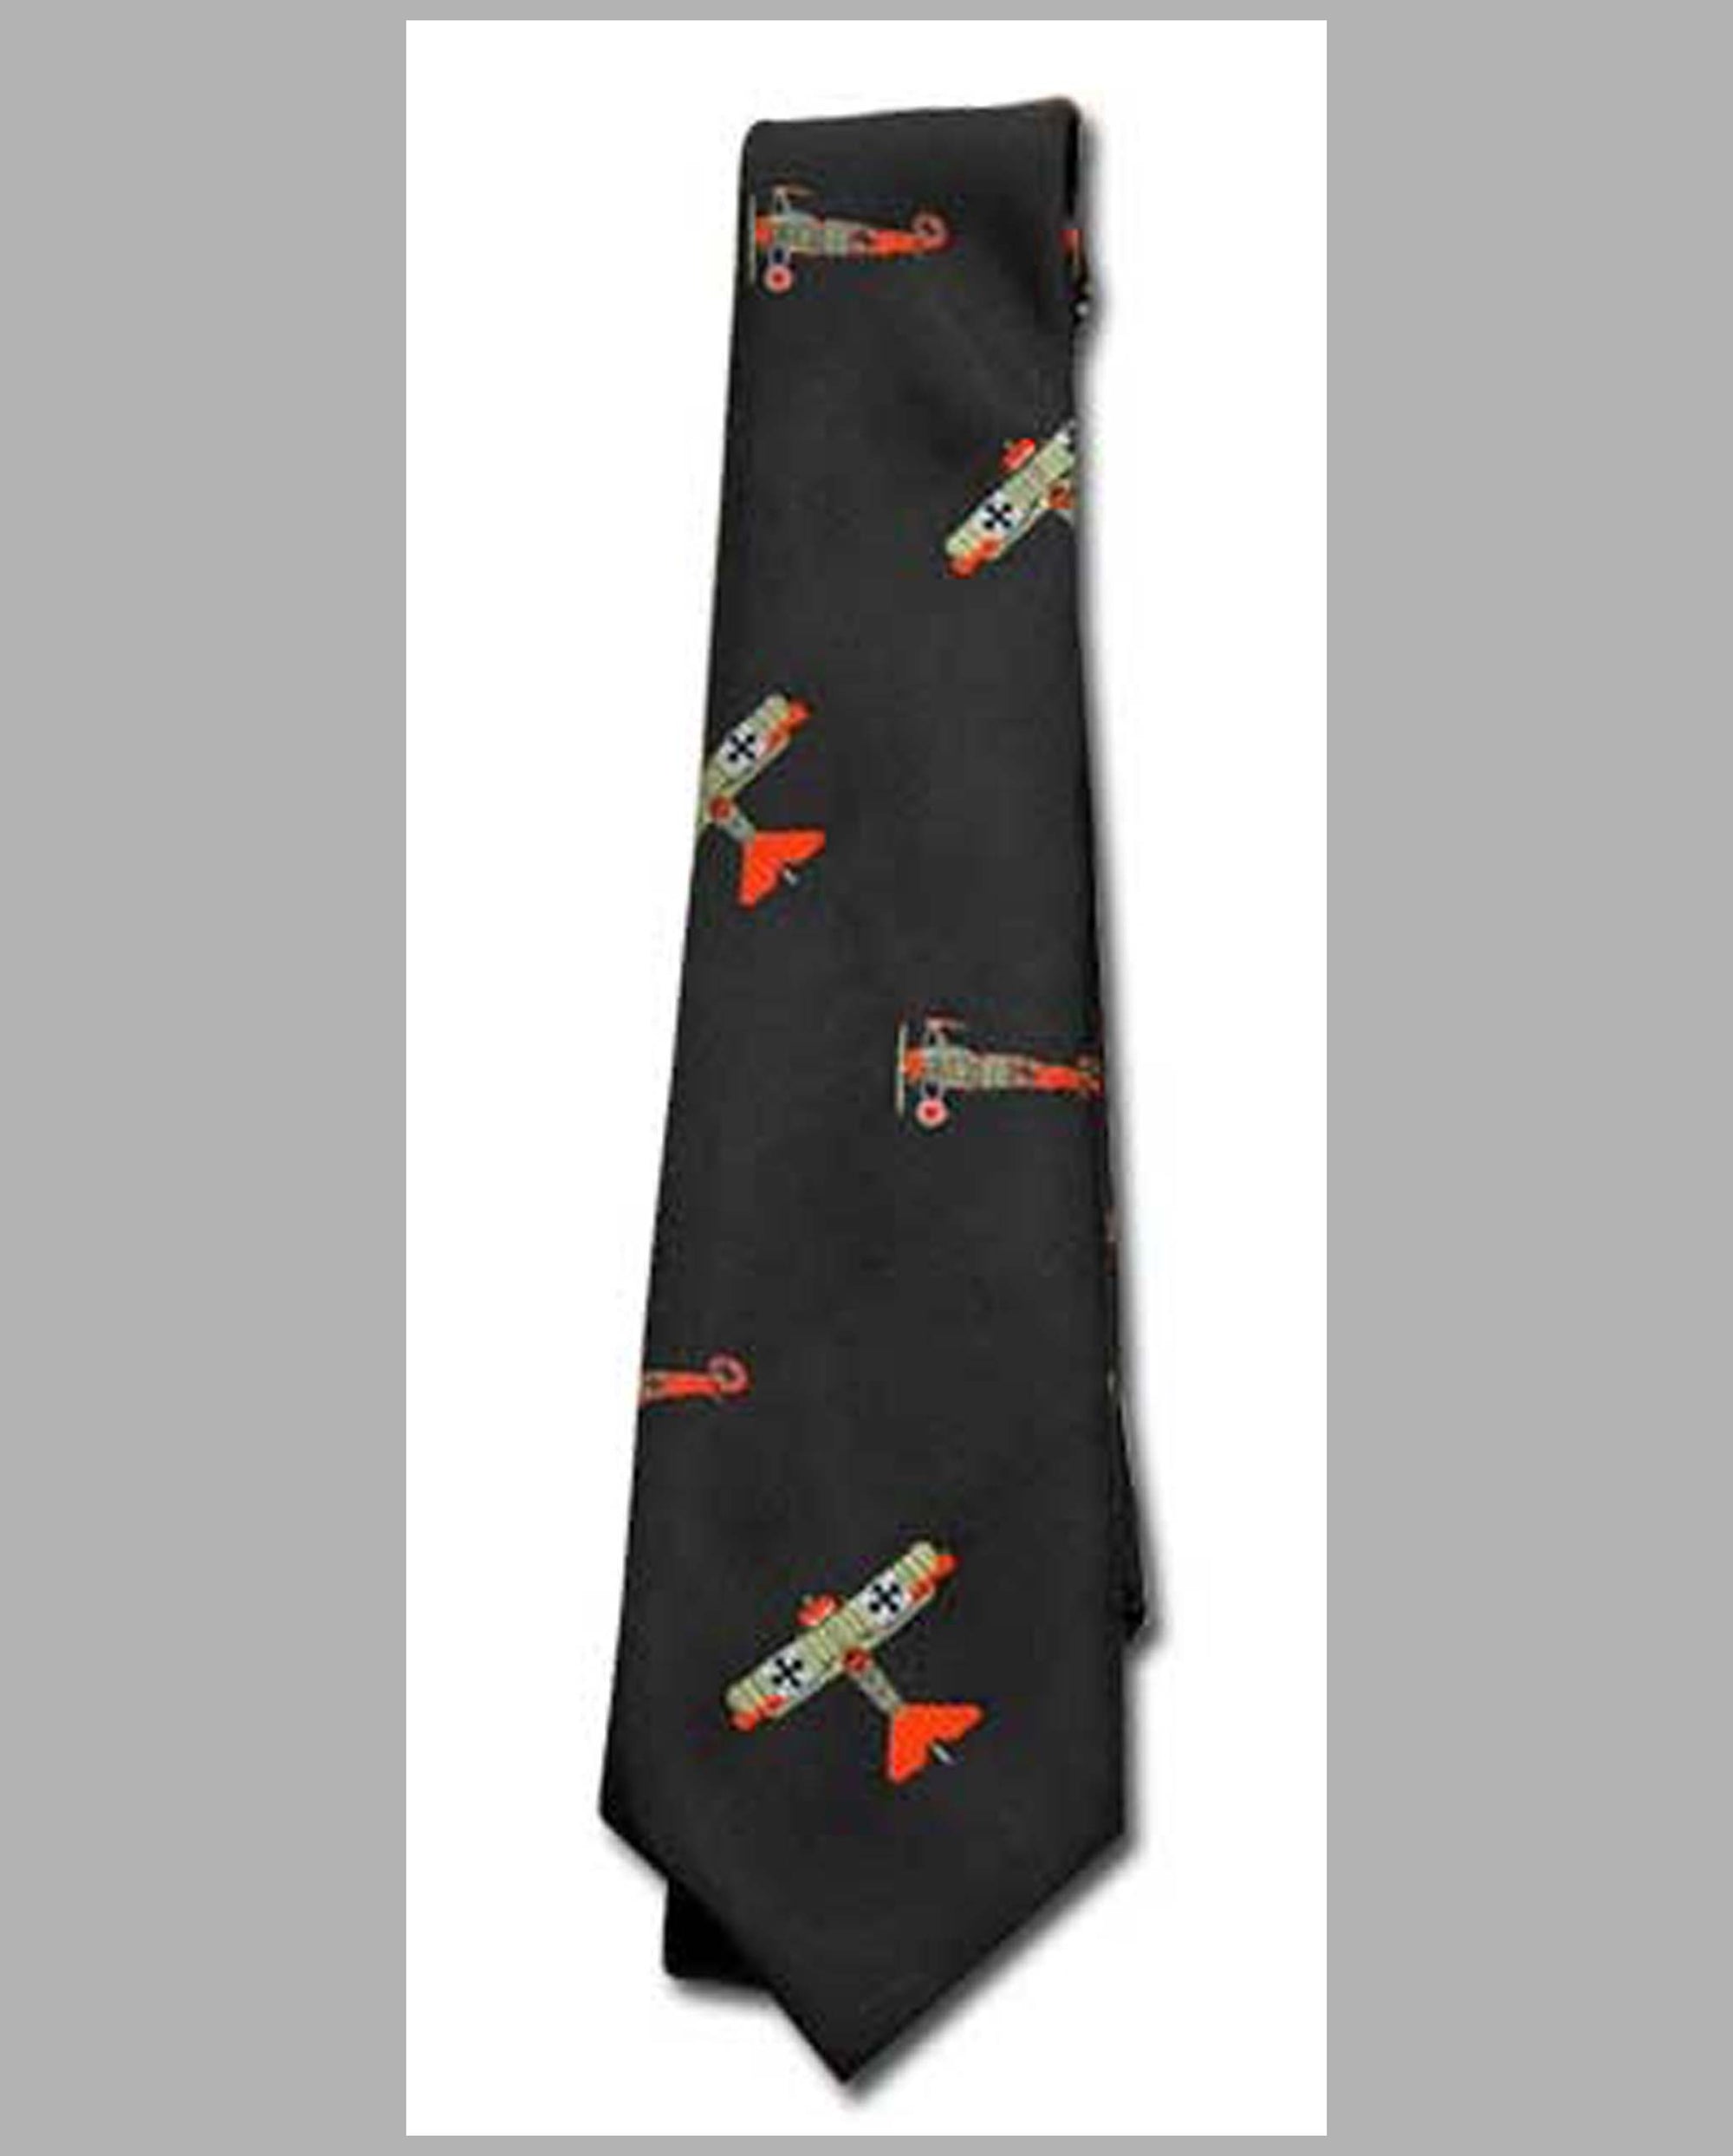 Aviation related necktie